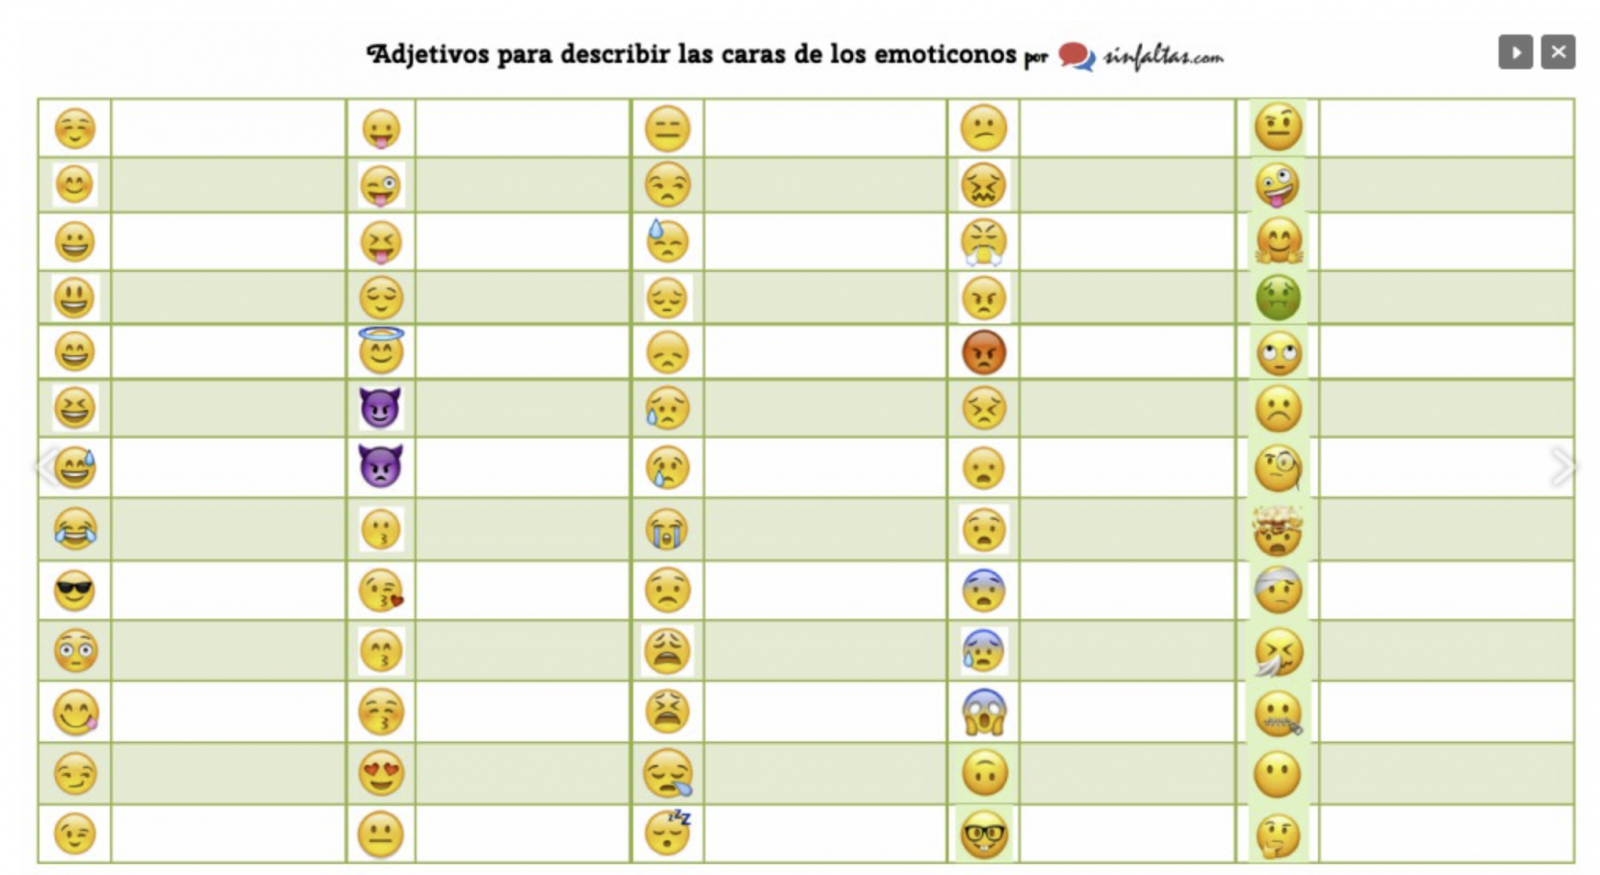 Tabla De Las Emociones Emojis Describe Todo Lo Que Pueden Significar Los Emoticonos